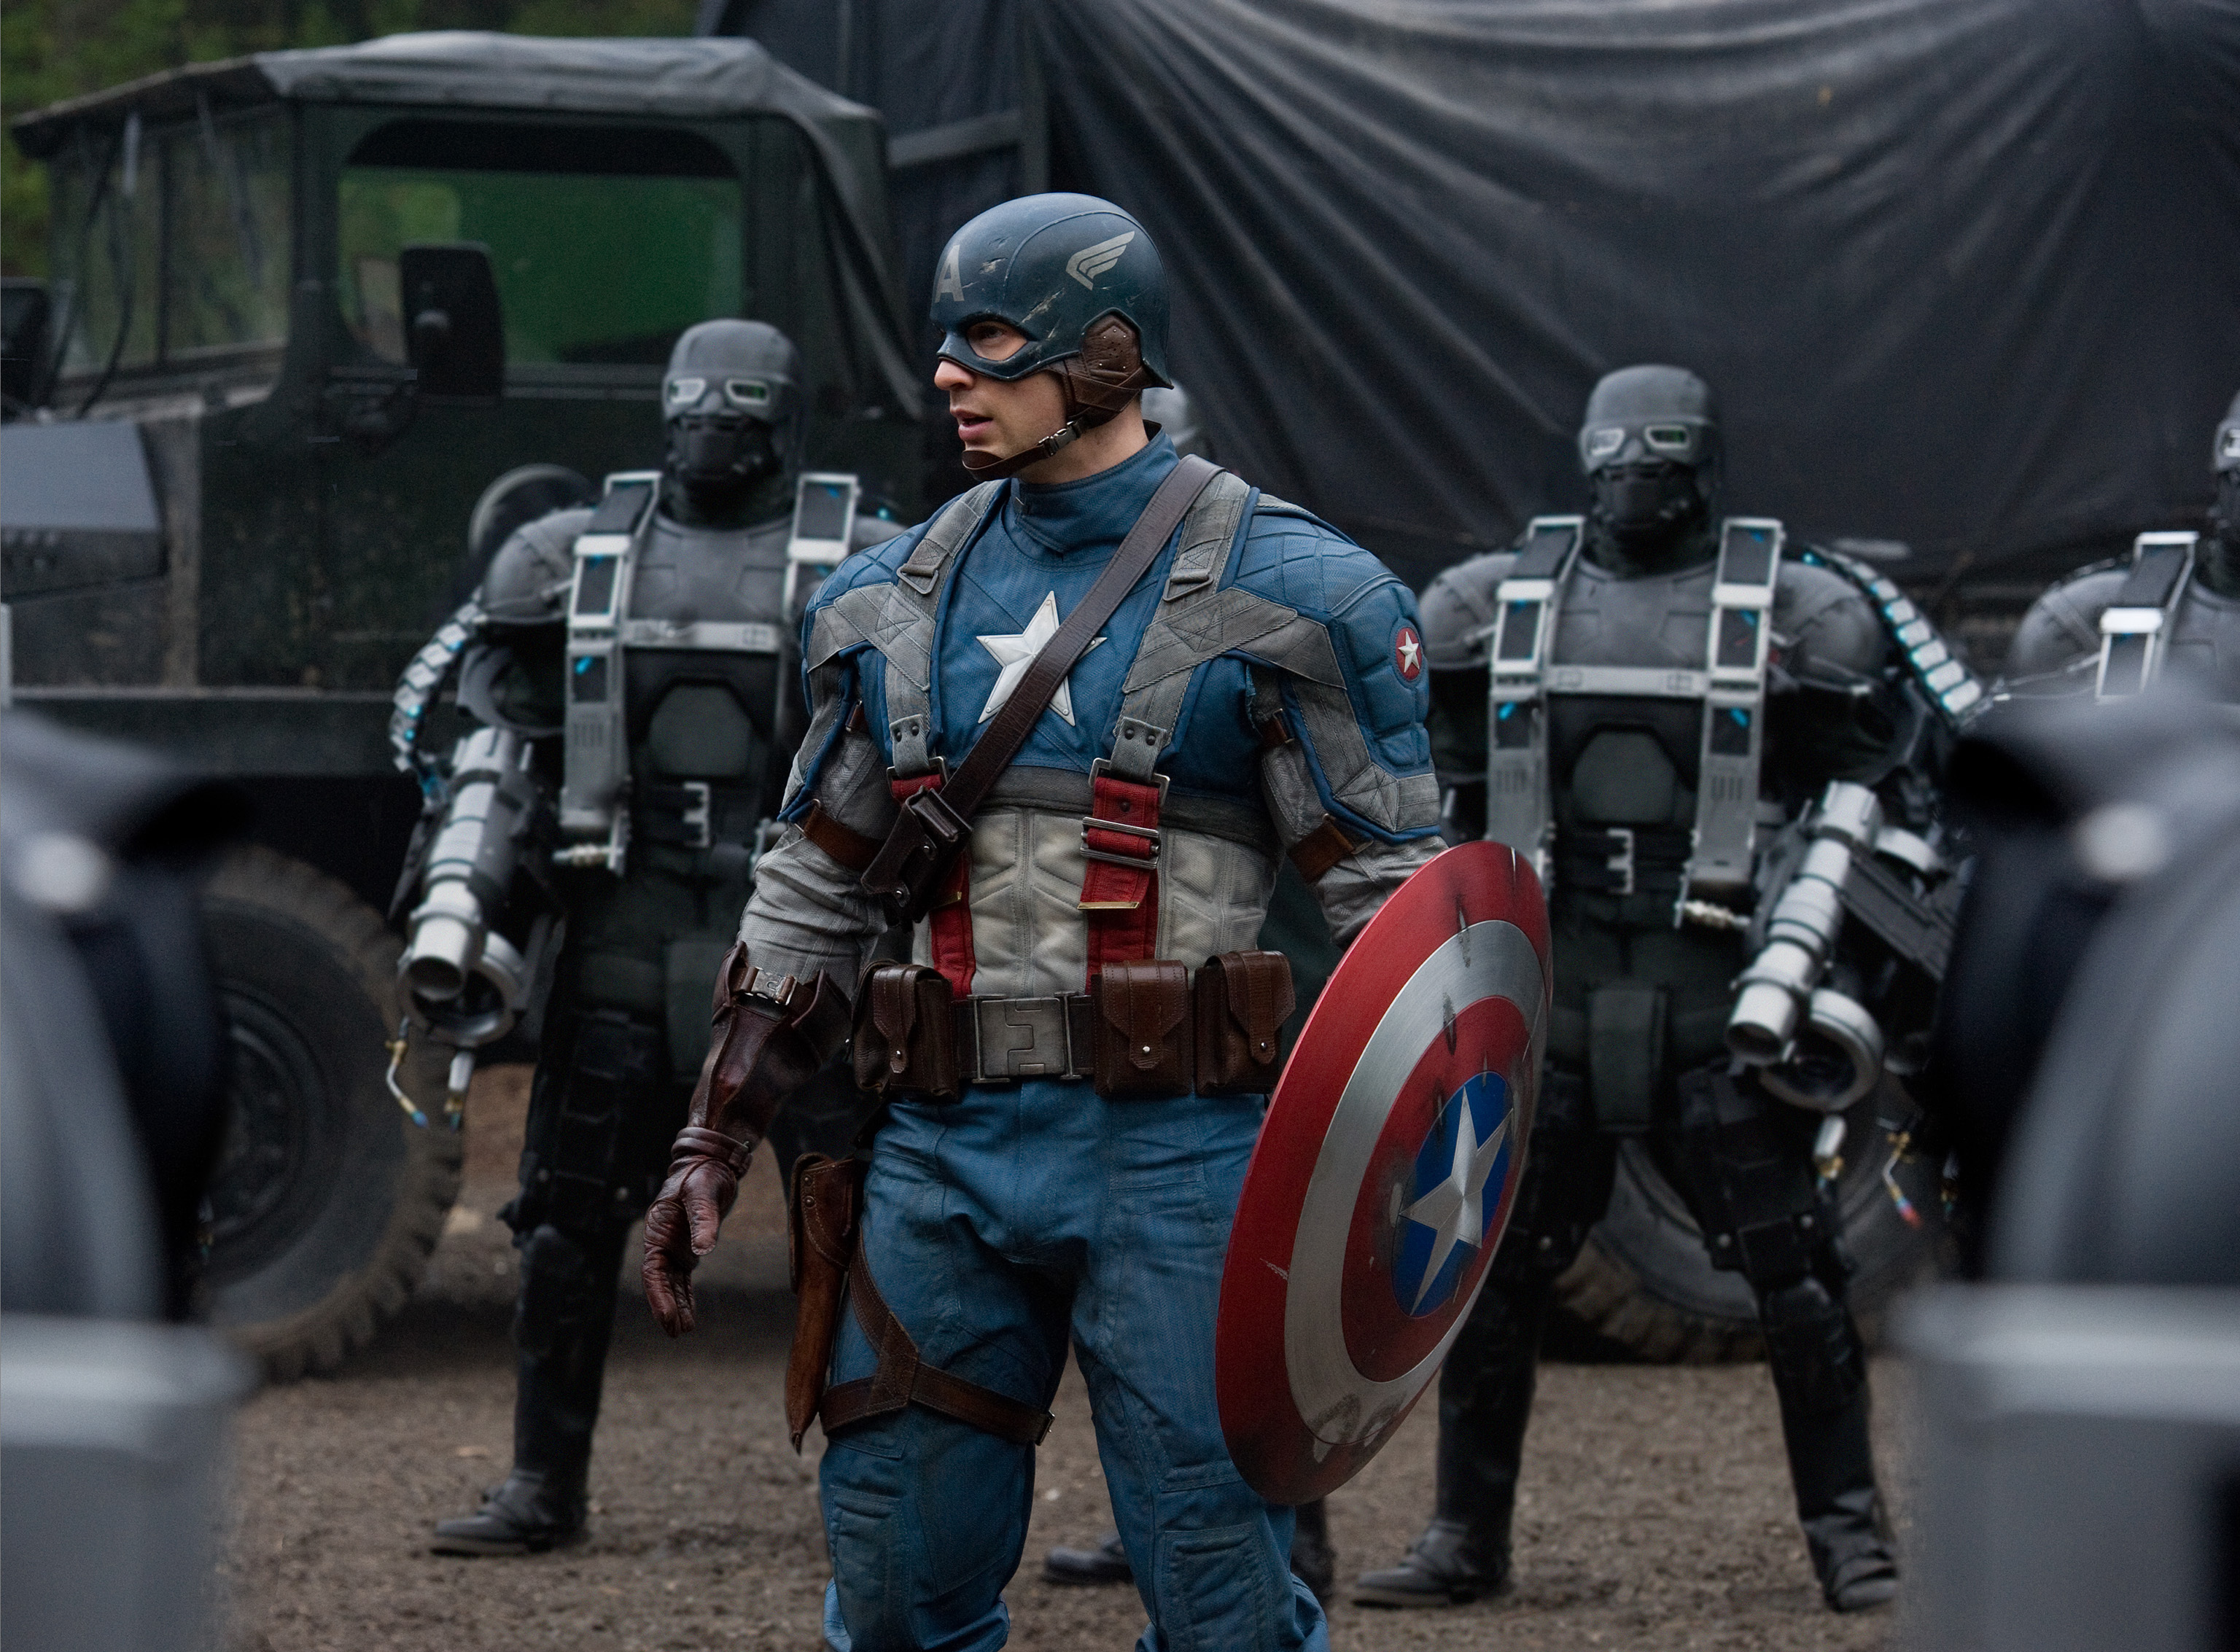  Steve fighting Hydra - Captain America : The First Avenger